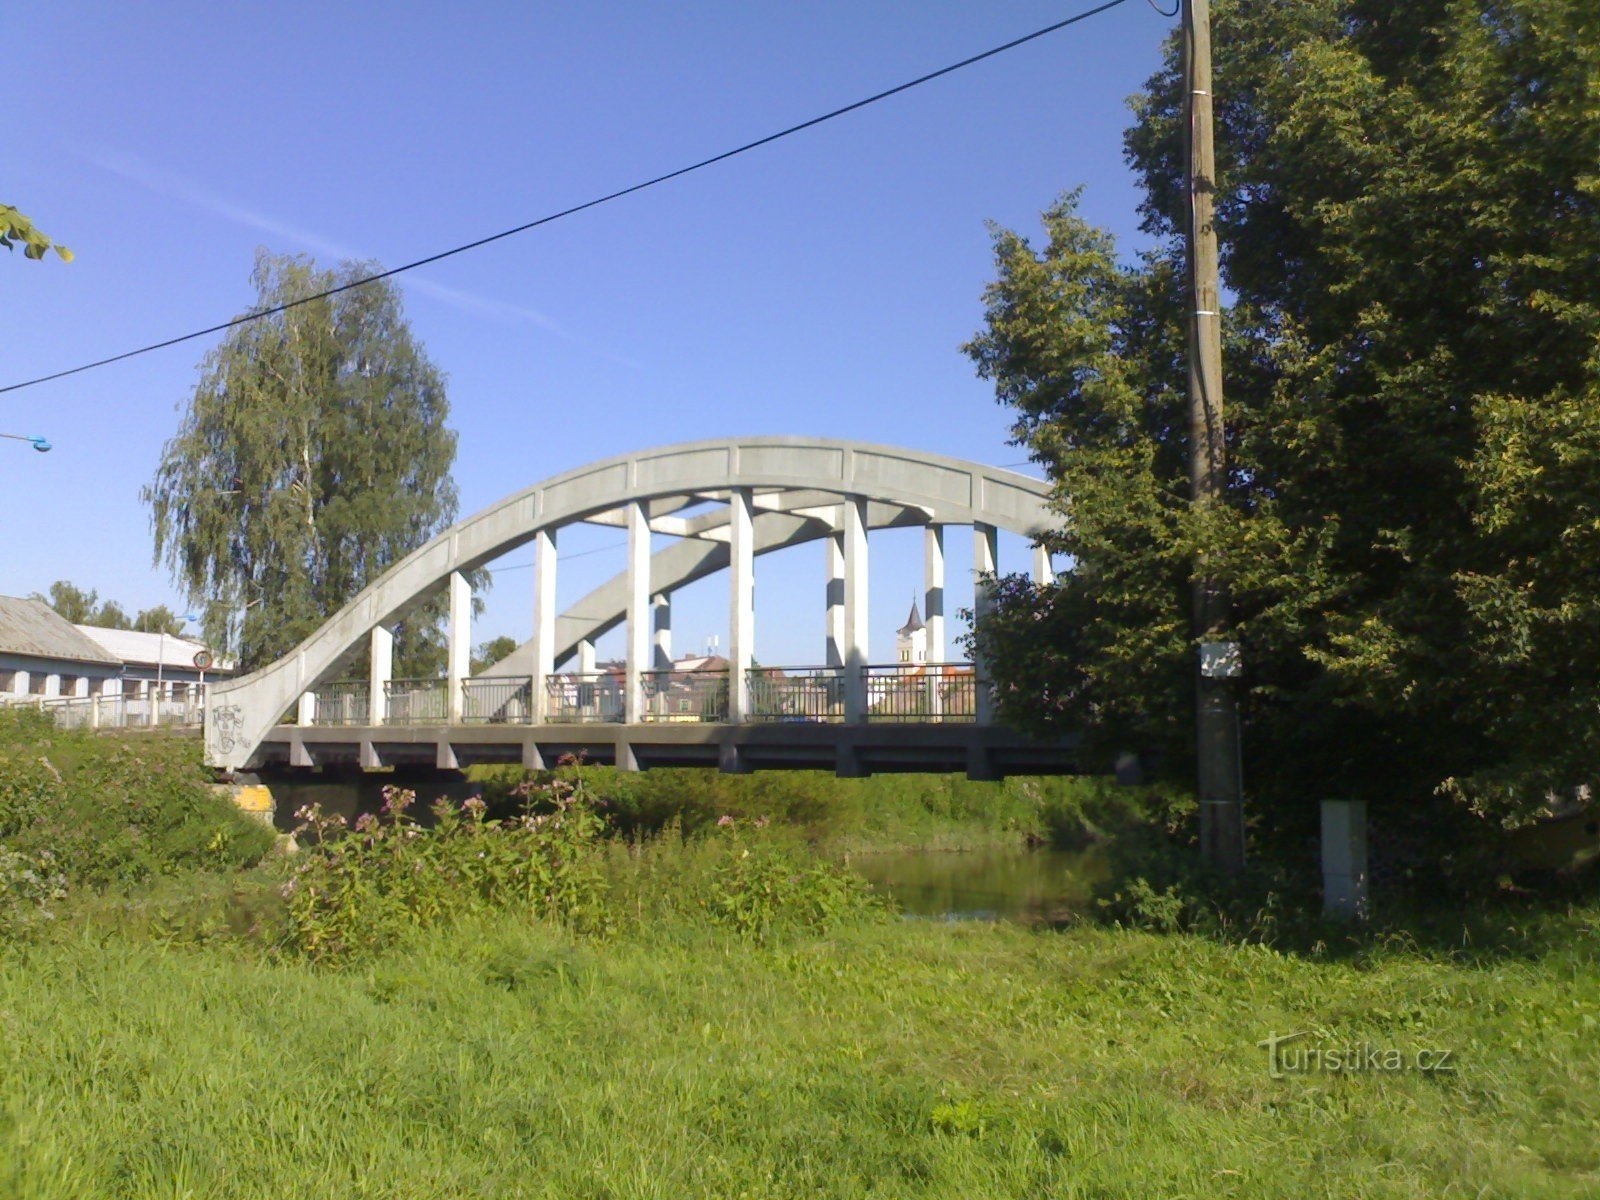 Týniště nad Orlicí - brug over Orlicí